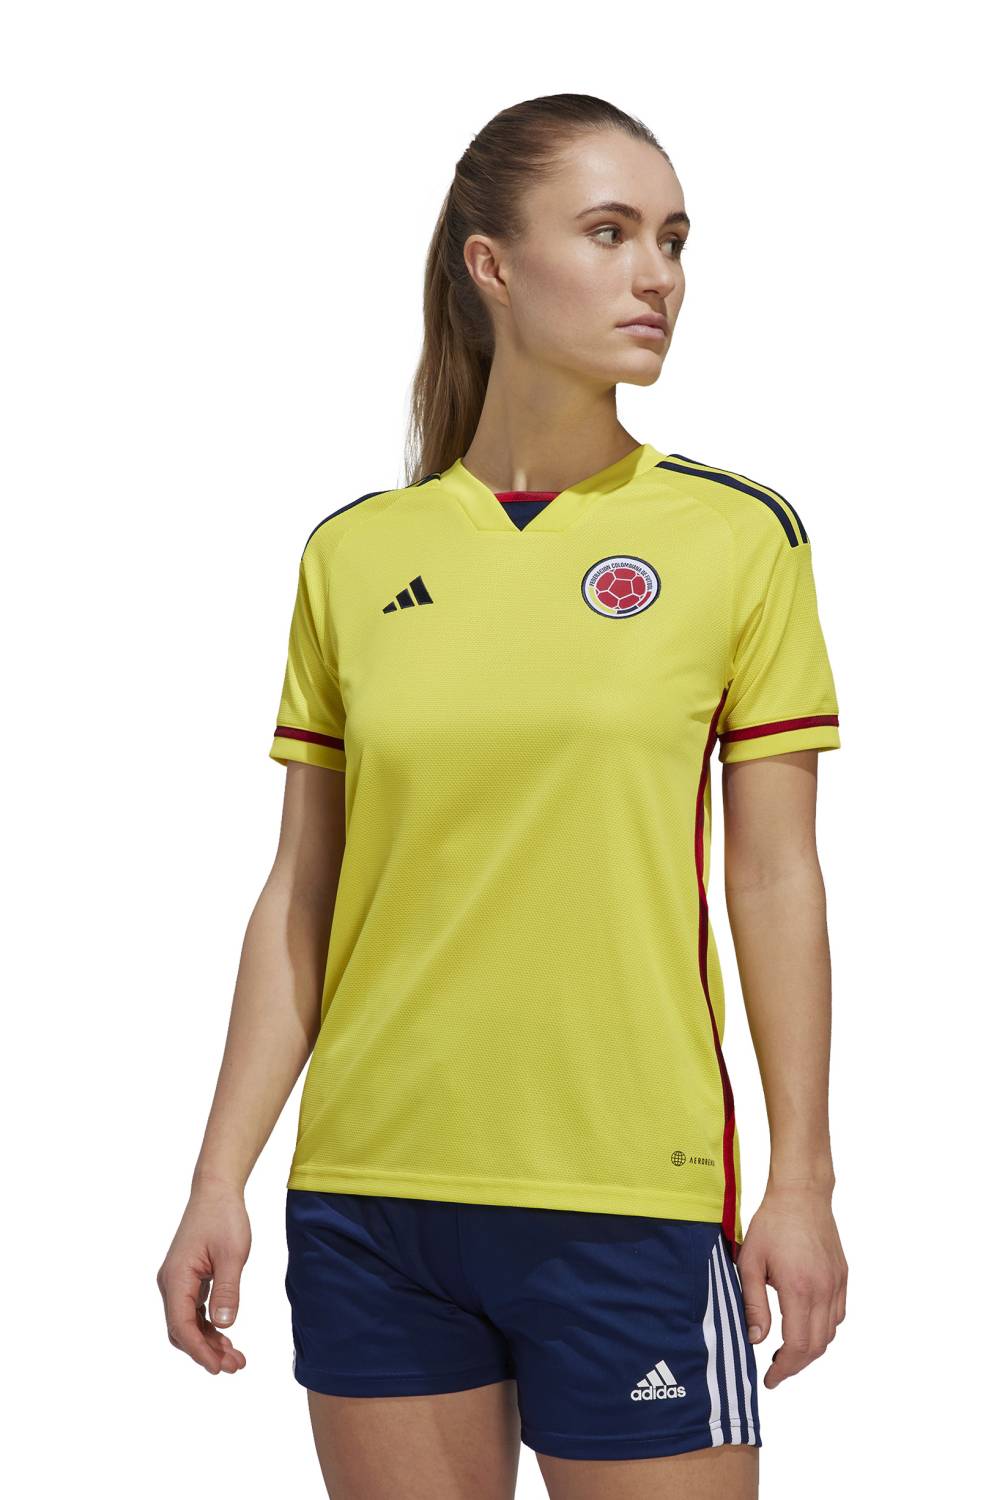 ADIDAS - Camiseta De Fútbol Colombia Local Mujer Adidas